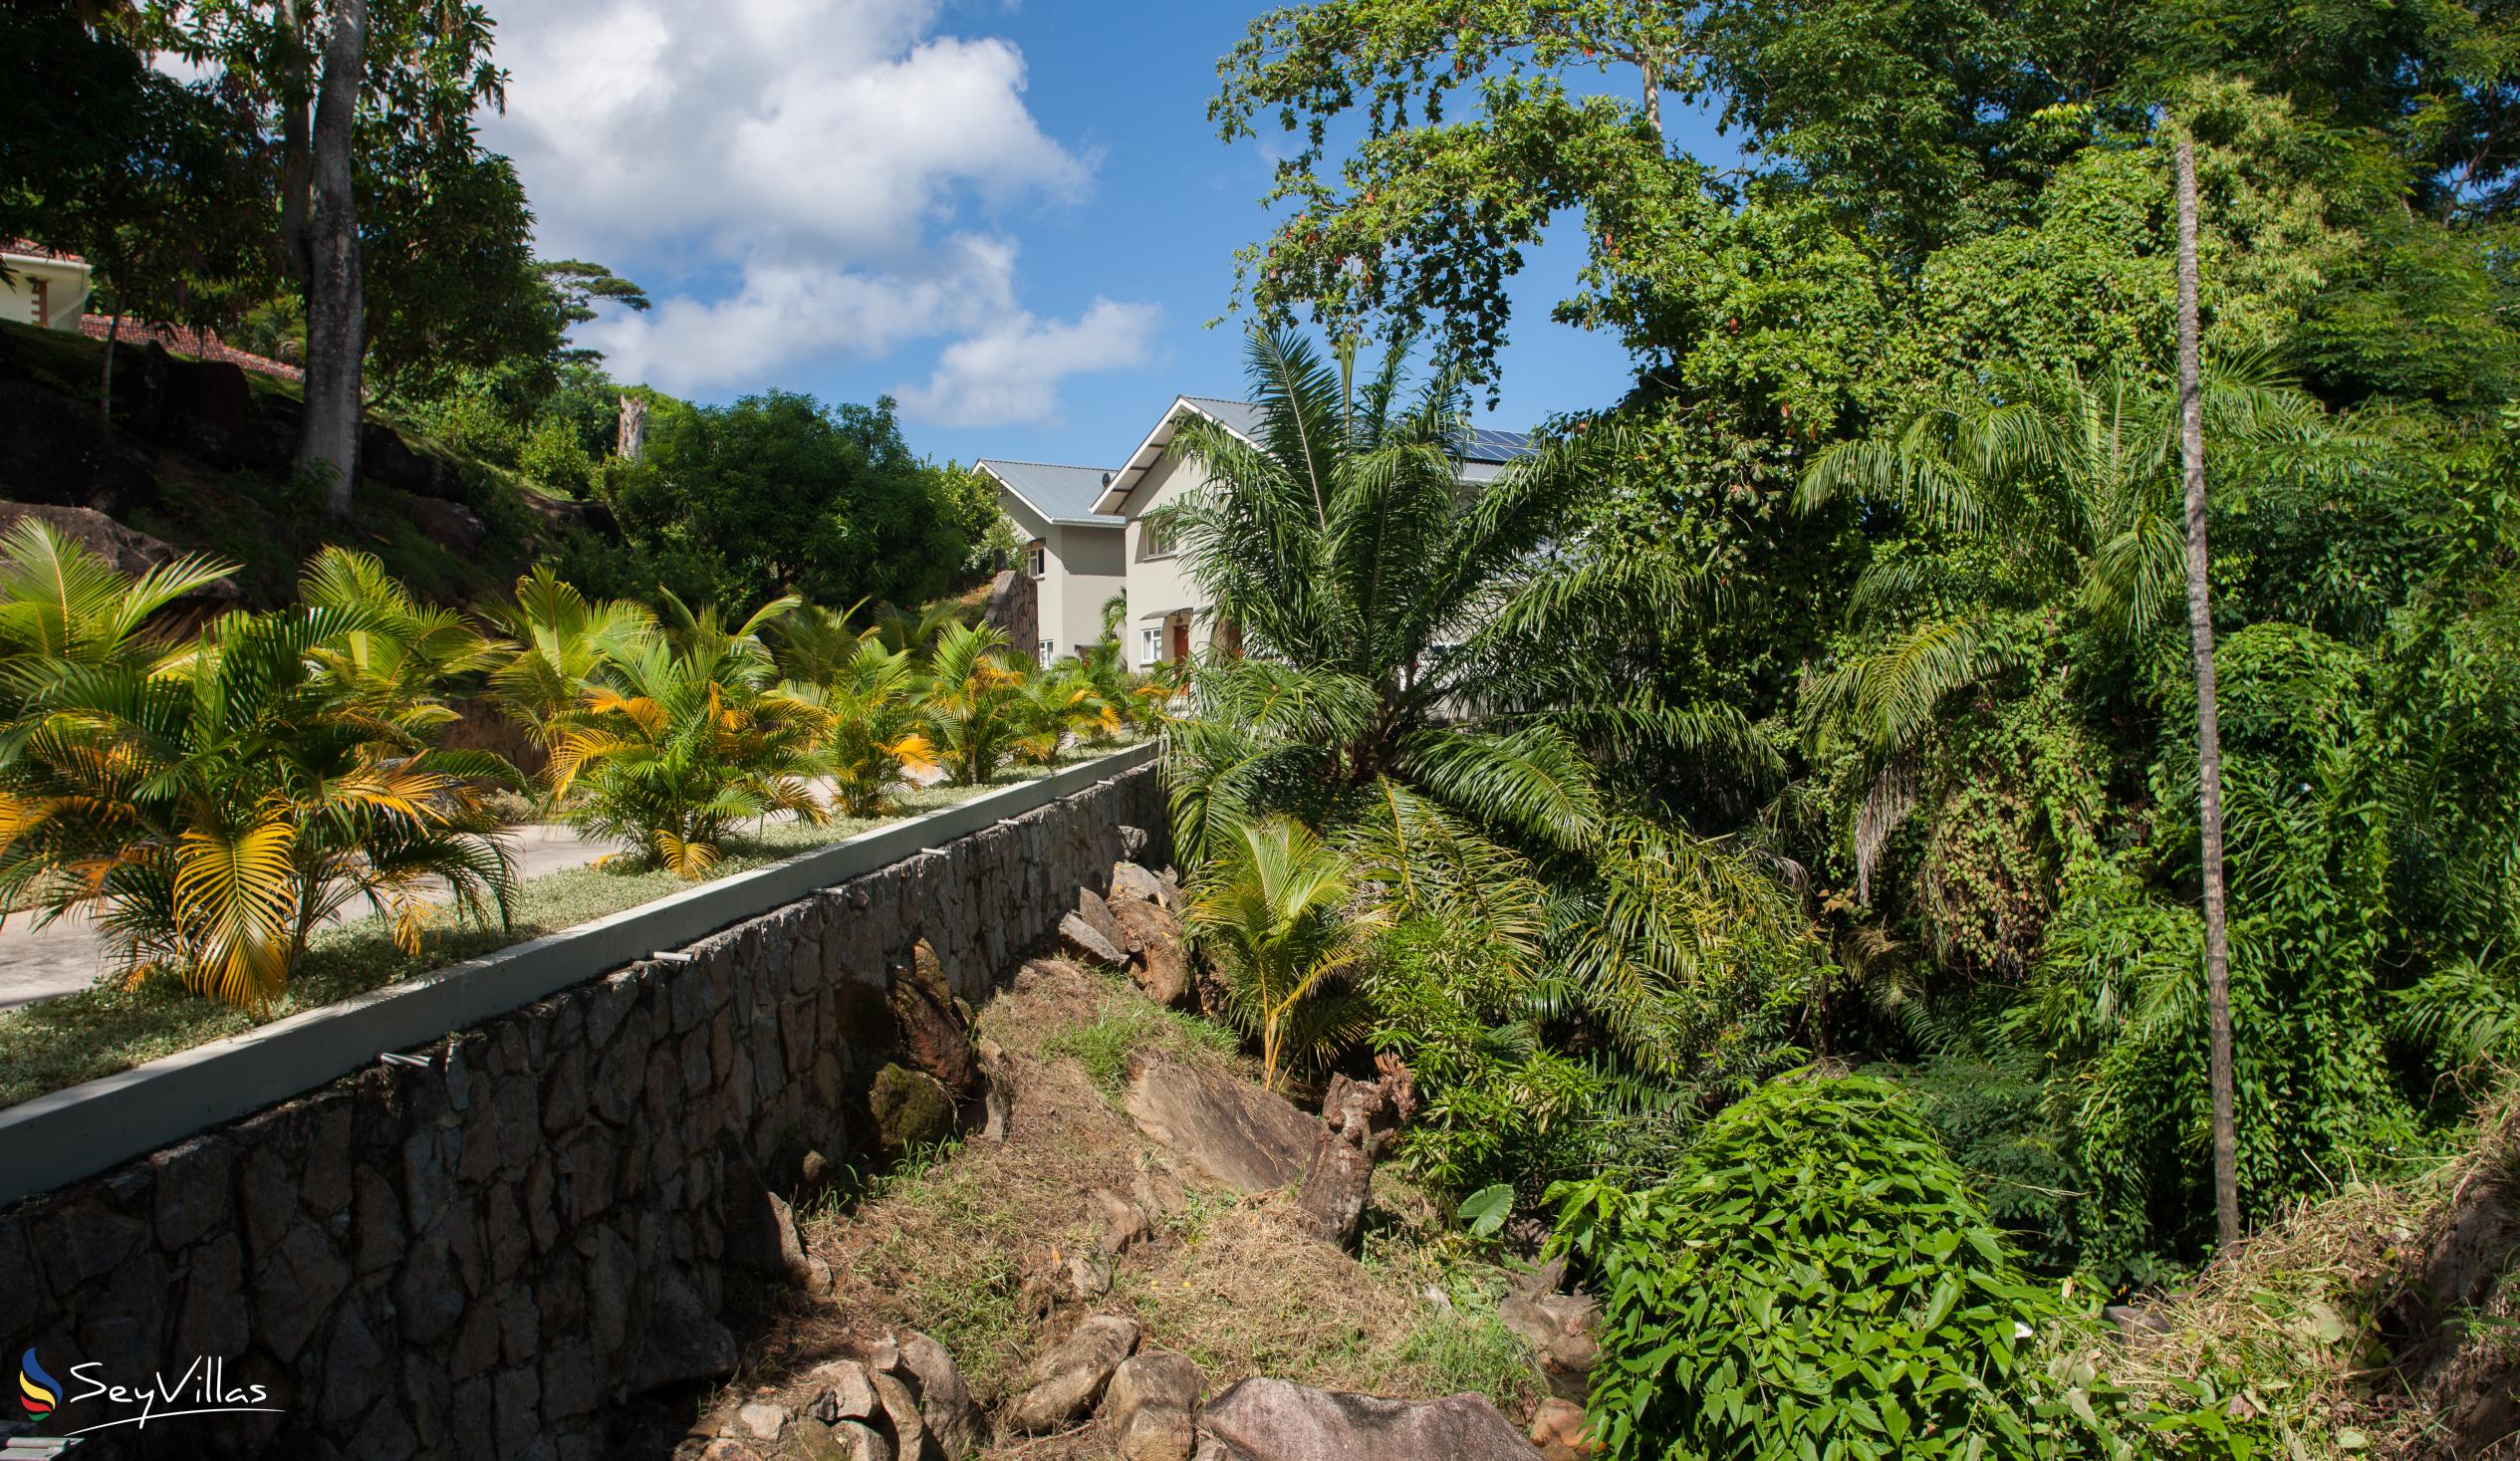 Foto 19: Bambous River Lodge - Aussenbereich - Mahé (Seychellen)